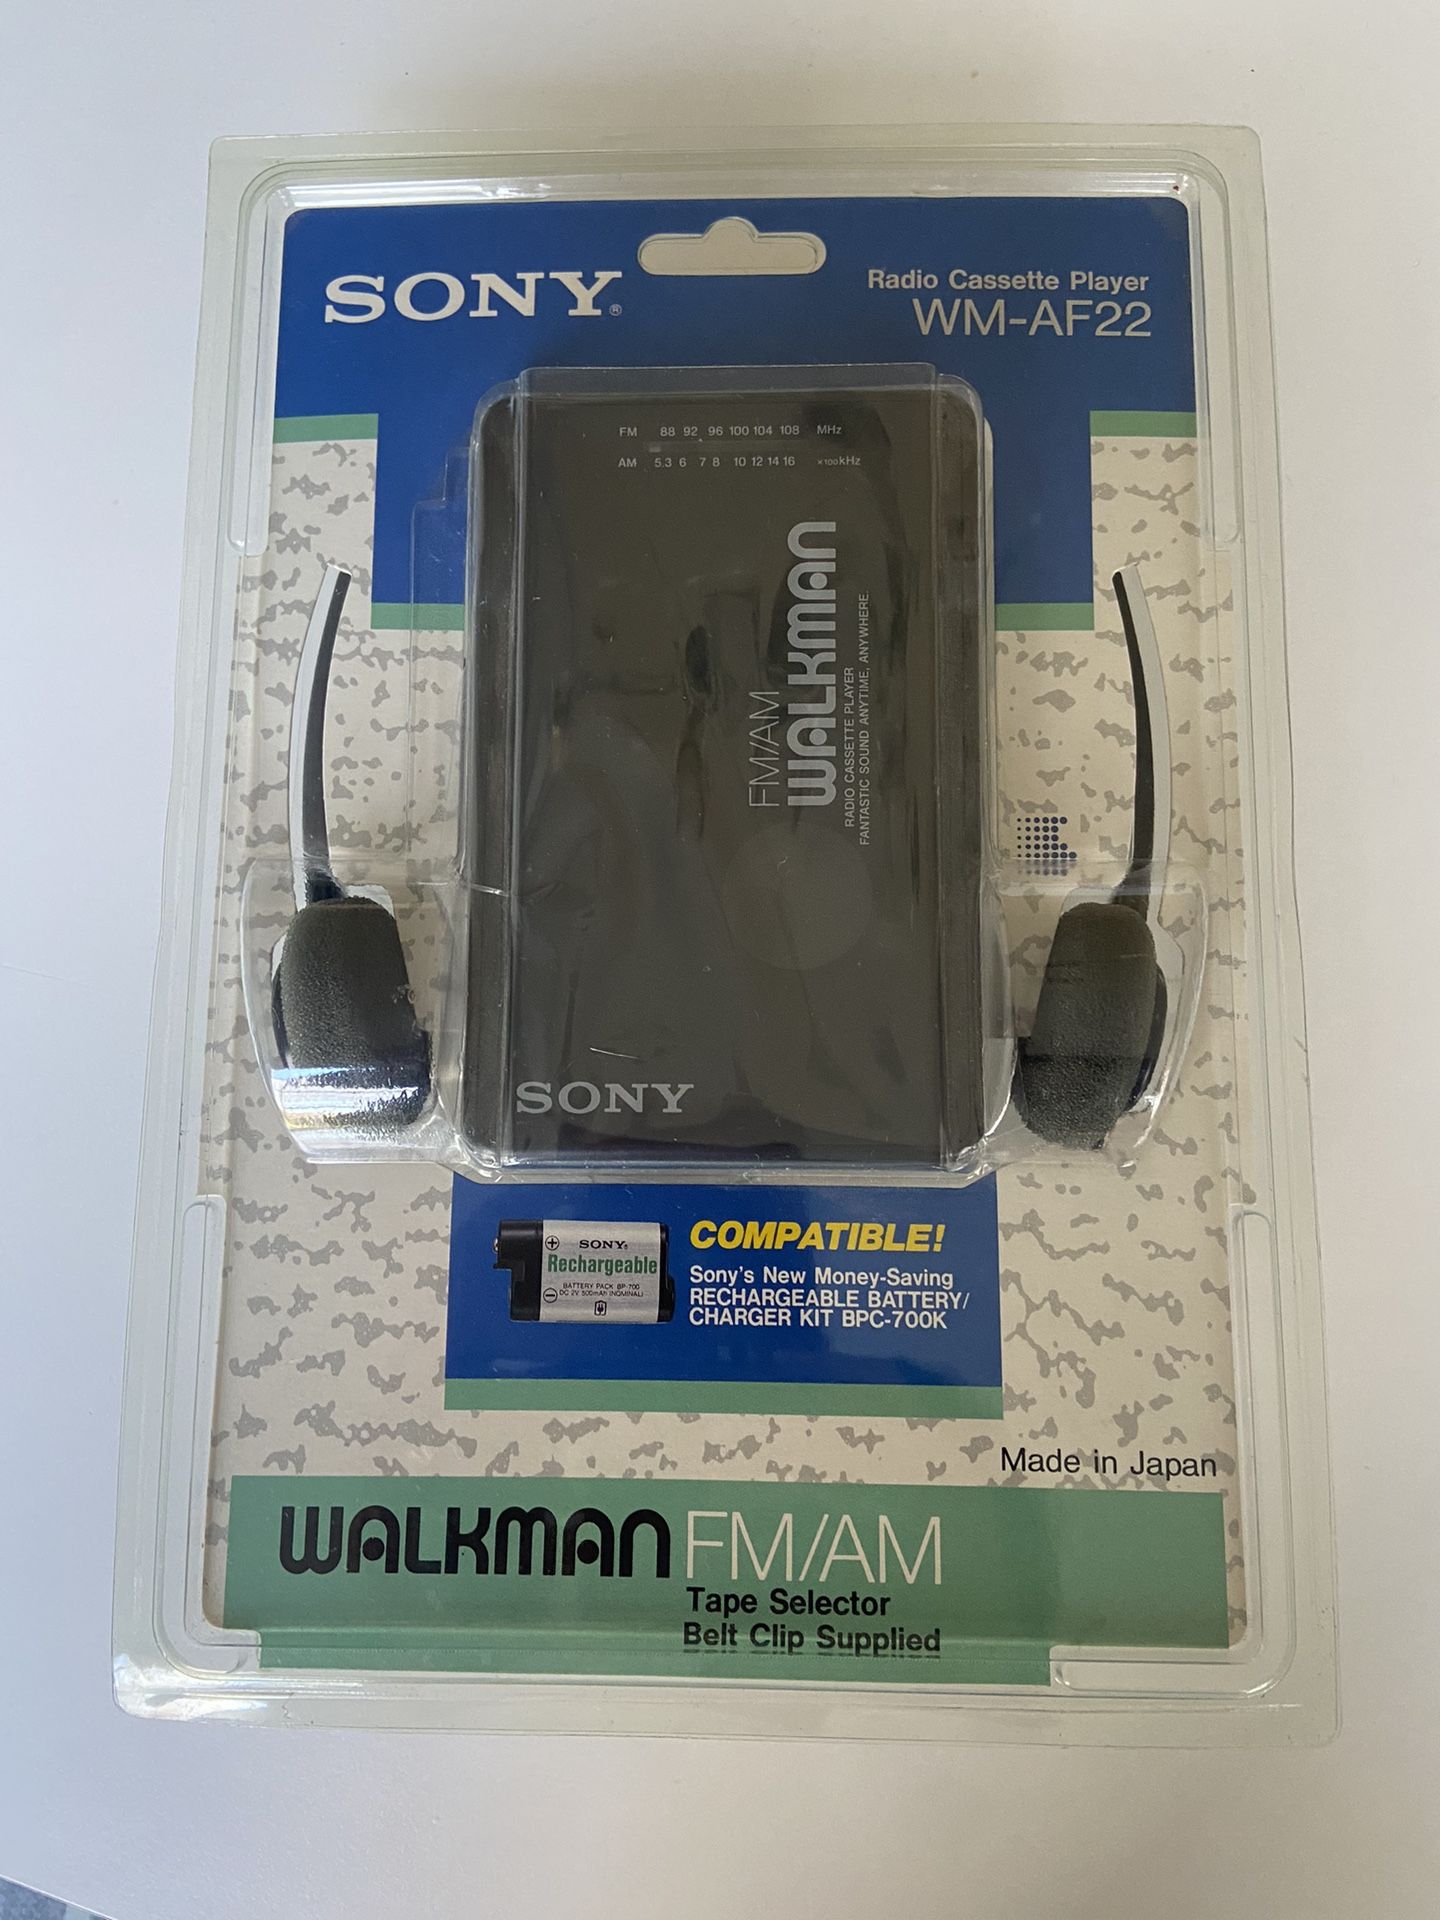 SONYWalkman FM/AM Radio Cassette Player